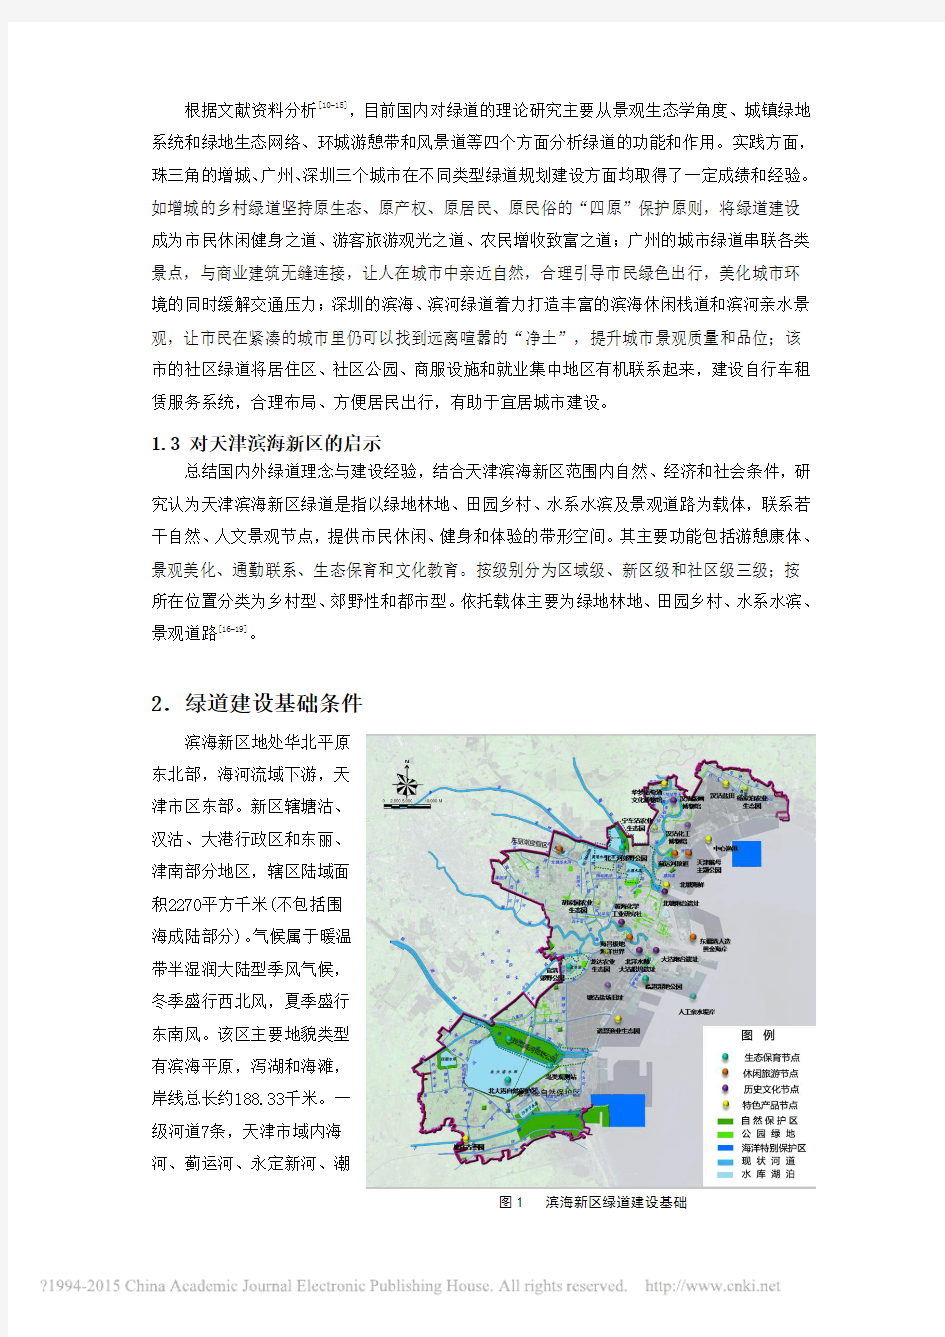 天津滨海新区绿道系统规划研究